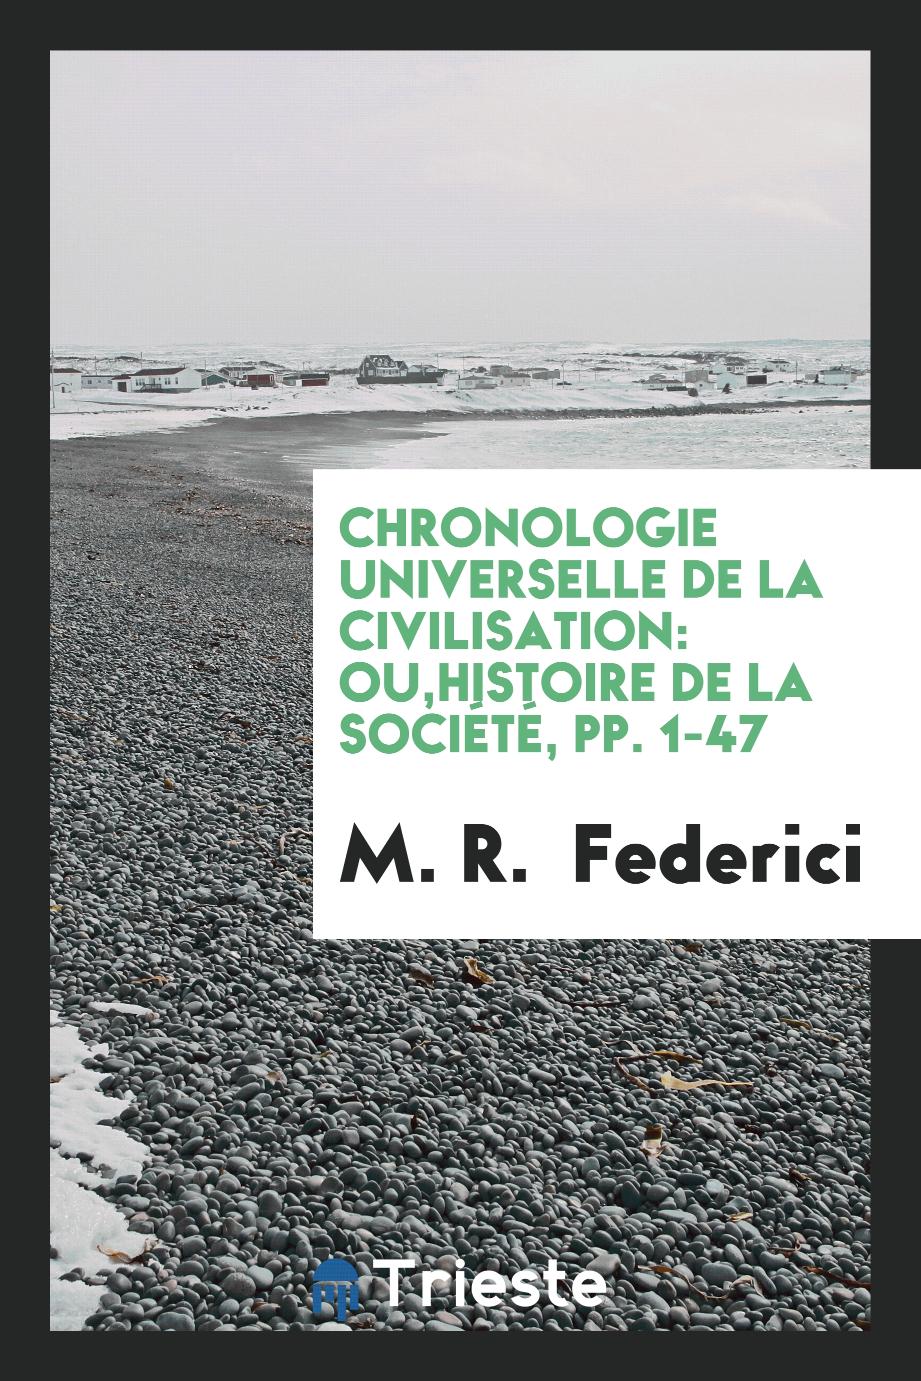 Chronologie Universelle de la Civilisation: Ou,Histoire de la Société, pp. 1-47